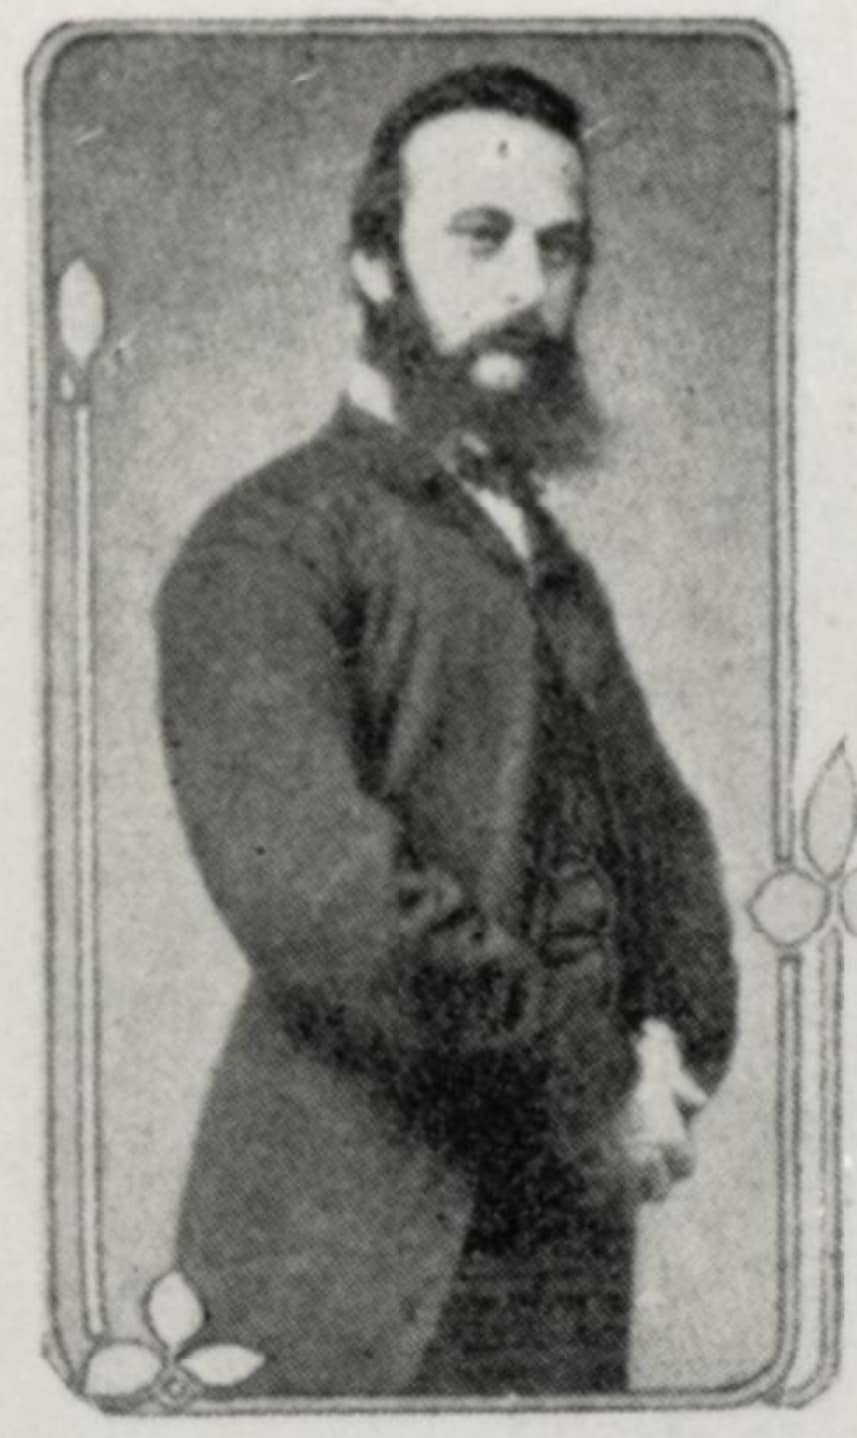 Joseph Wilkie (c. 1860s)